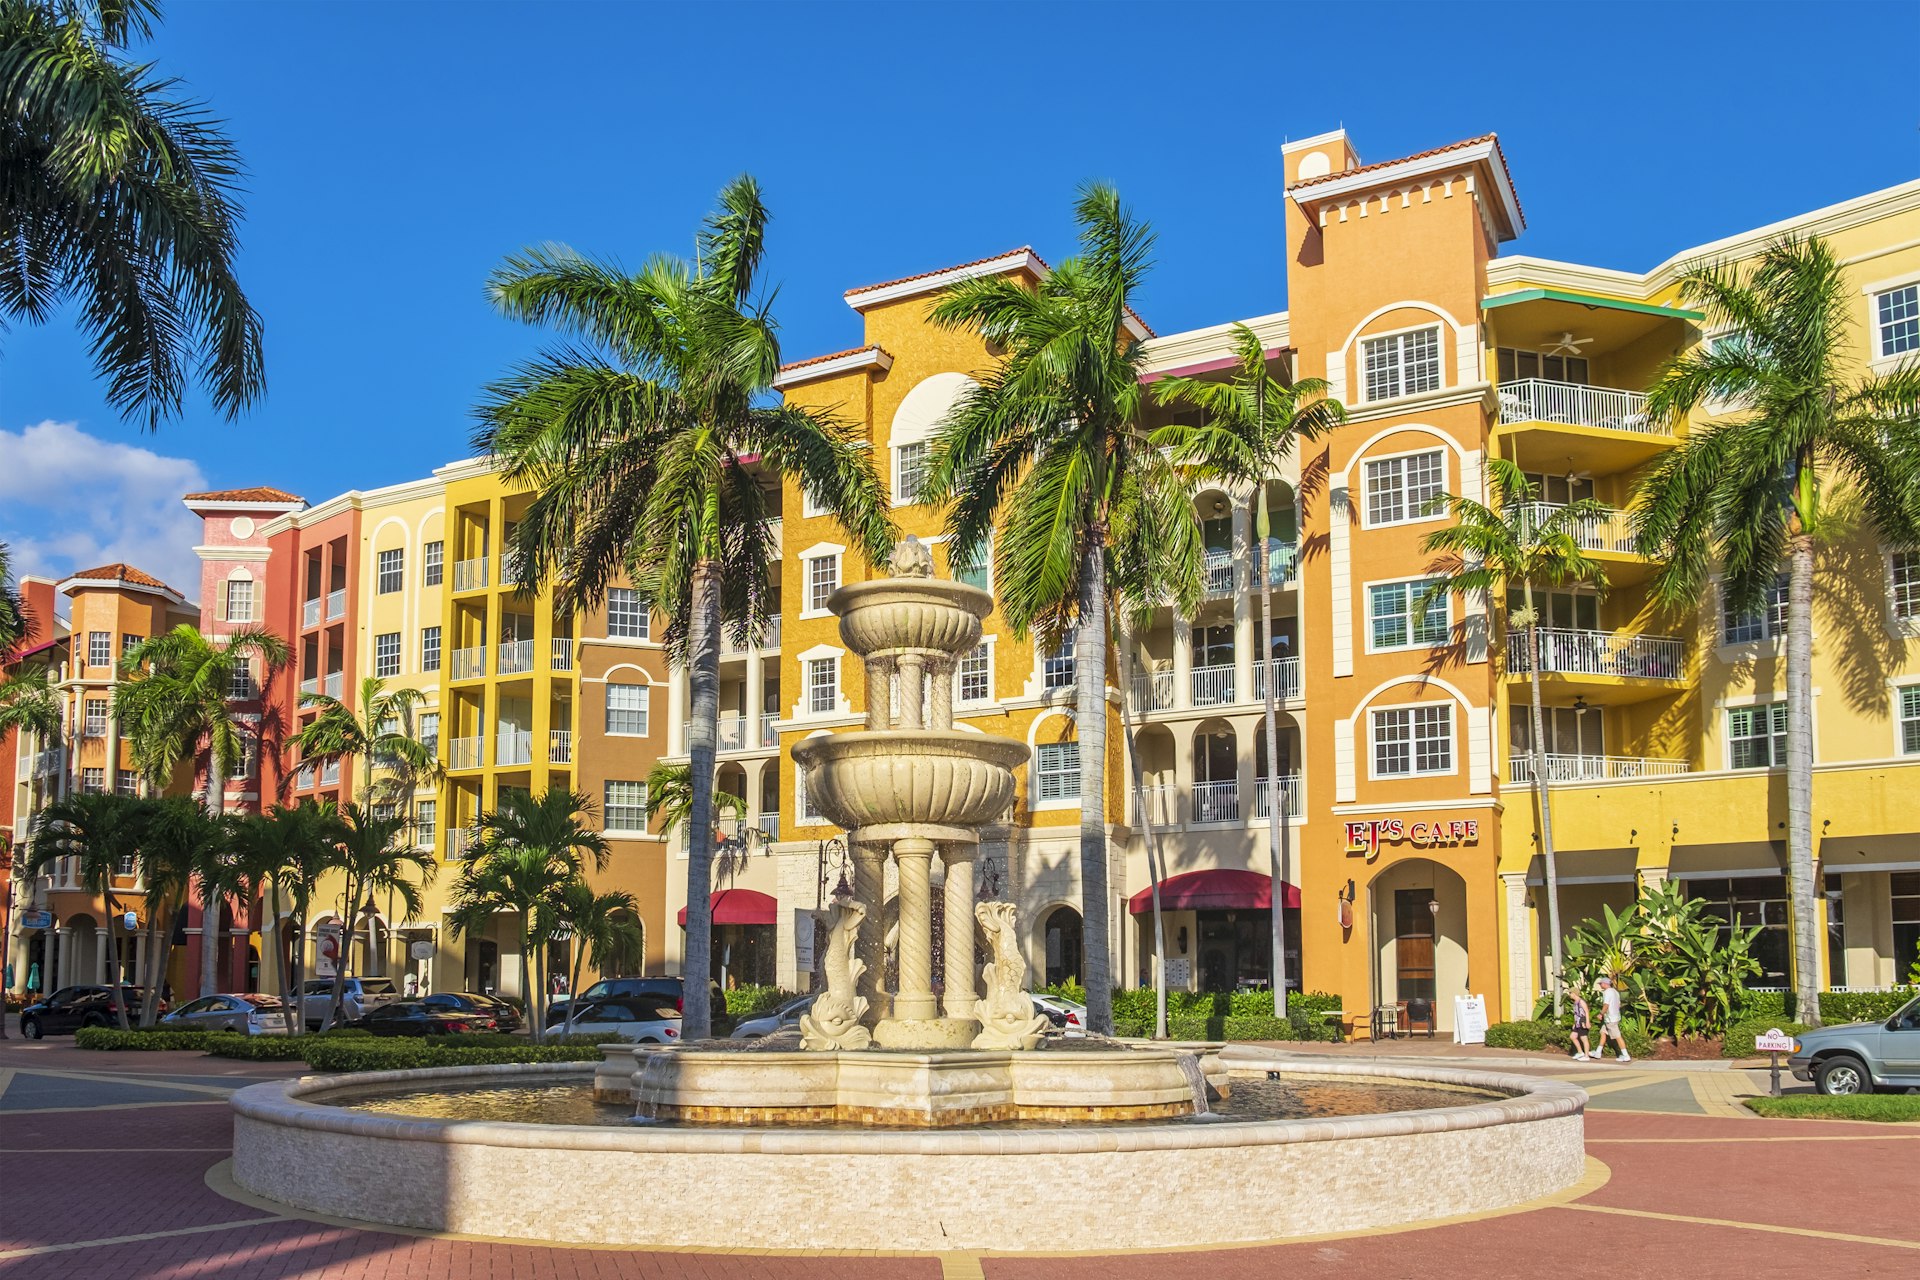 Uma fonte com palmeiras fica em frente a uma fileira de edifícios altos e coloridos em estilo europeu